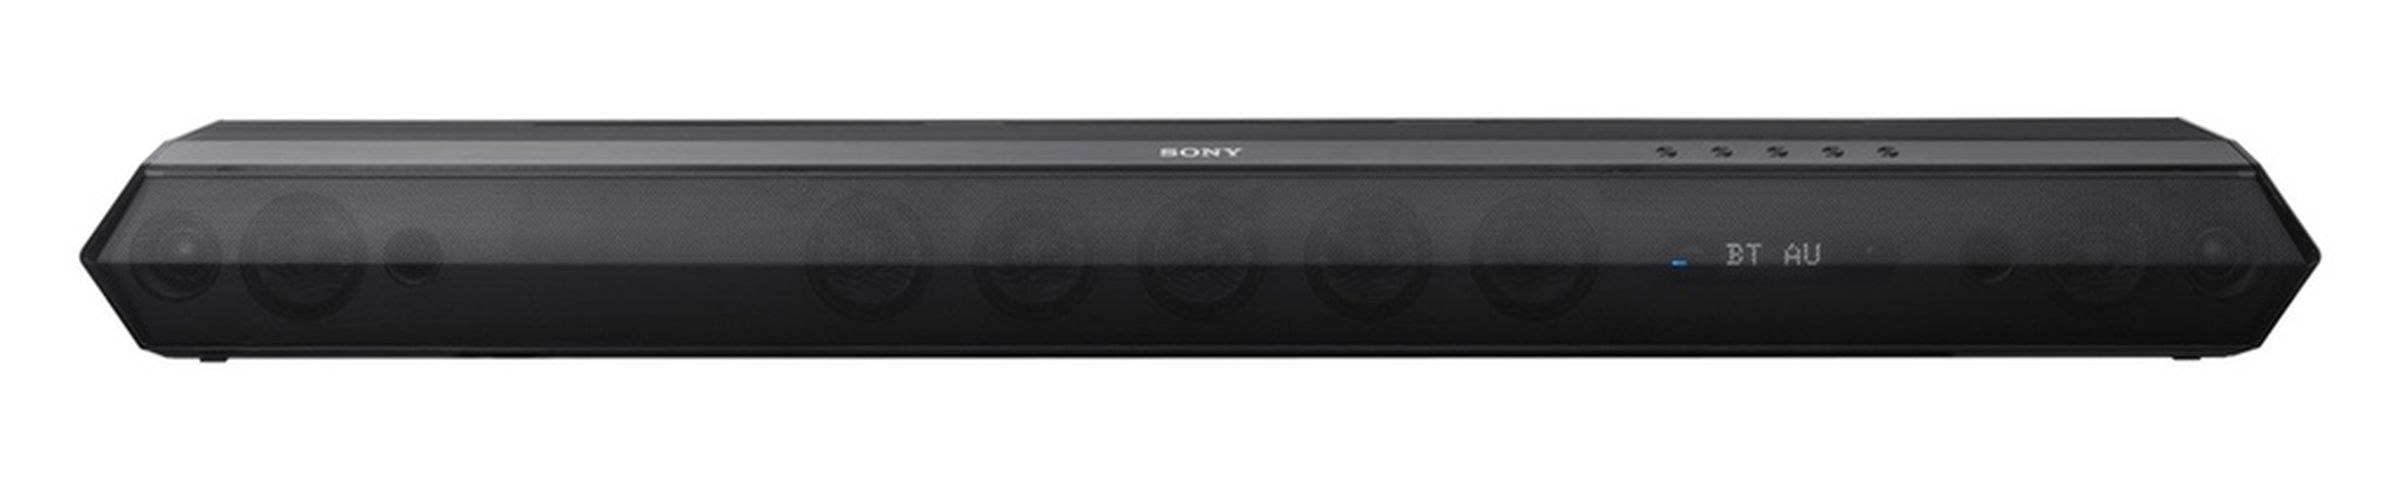 Sony HT-ST7 soundbar photos